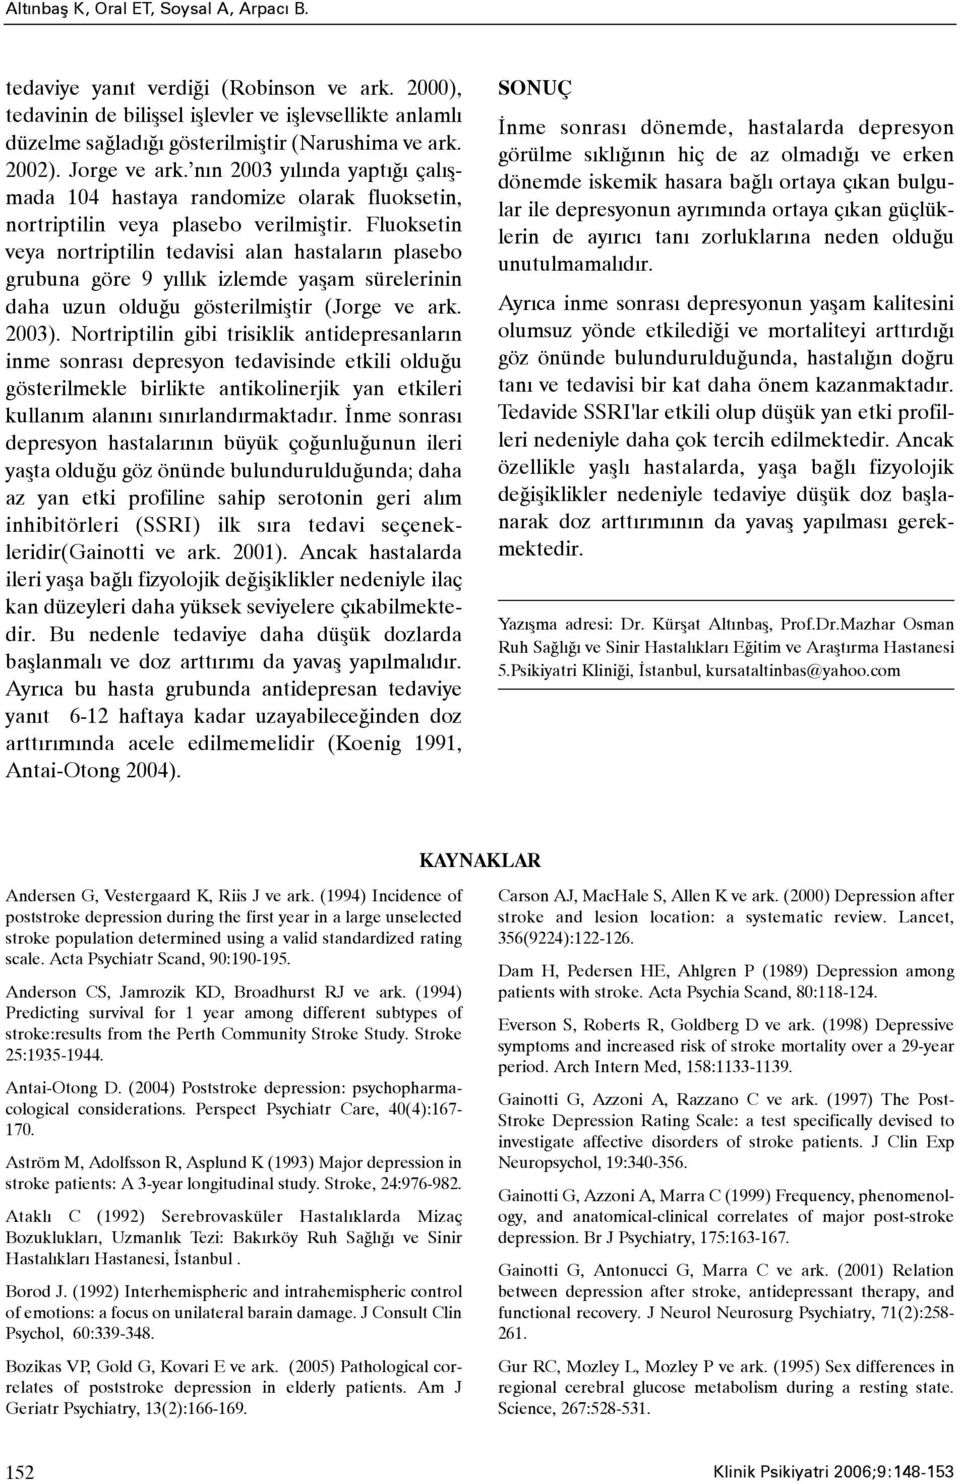 Fluoksetin veya nortriptilin tedavisi alan hastalarýn plasebo grubuna göre 9 yýllýk izlemde yaþam sürelerinin daha uzun olduðu gösterilmiþtir (Jorge ve ark. 2003).